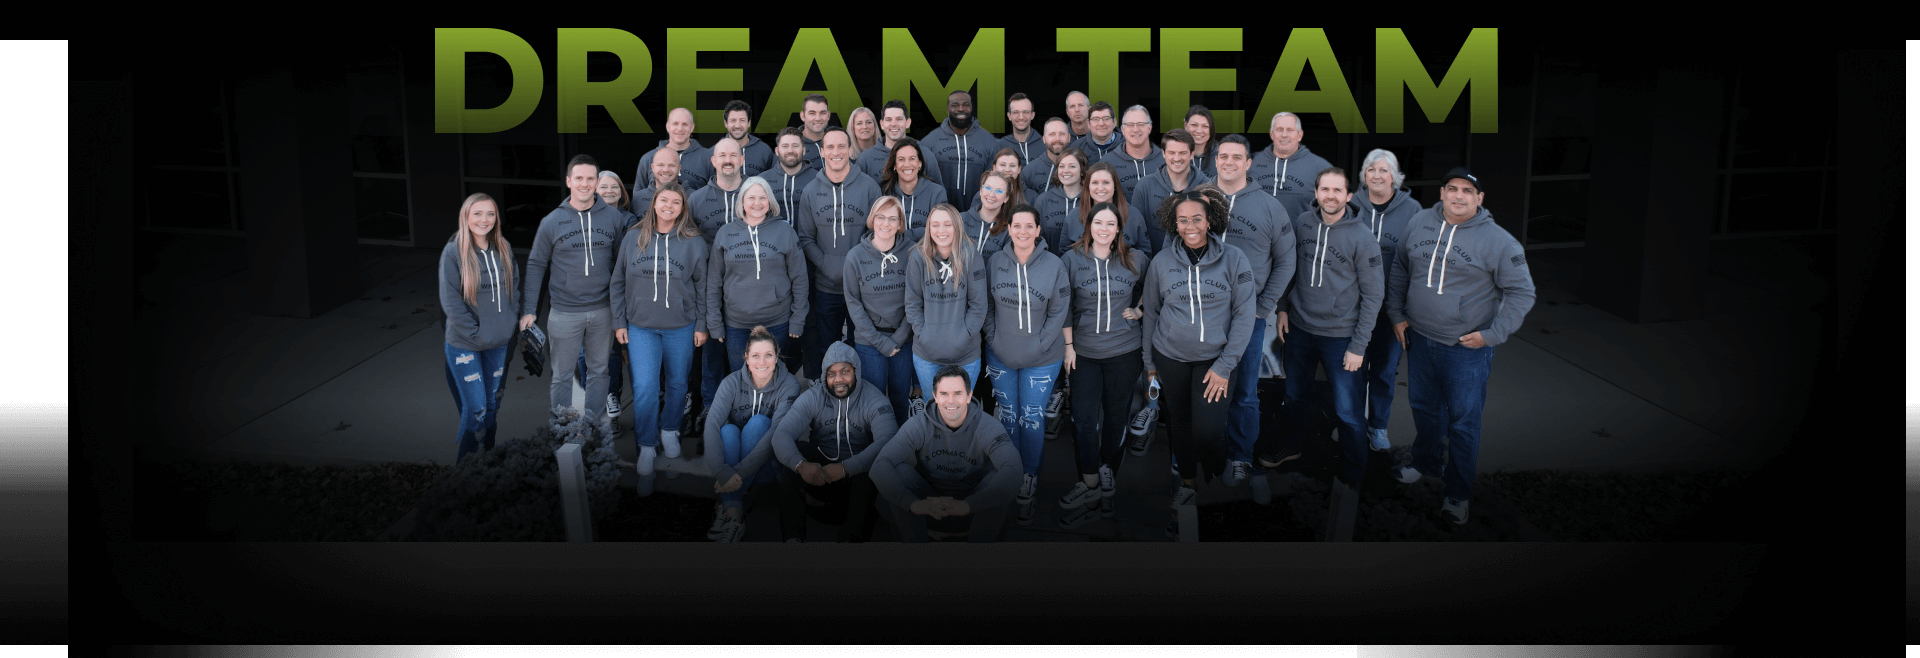 Dream Team Background